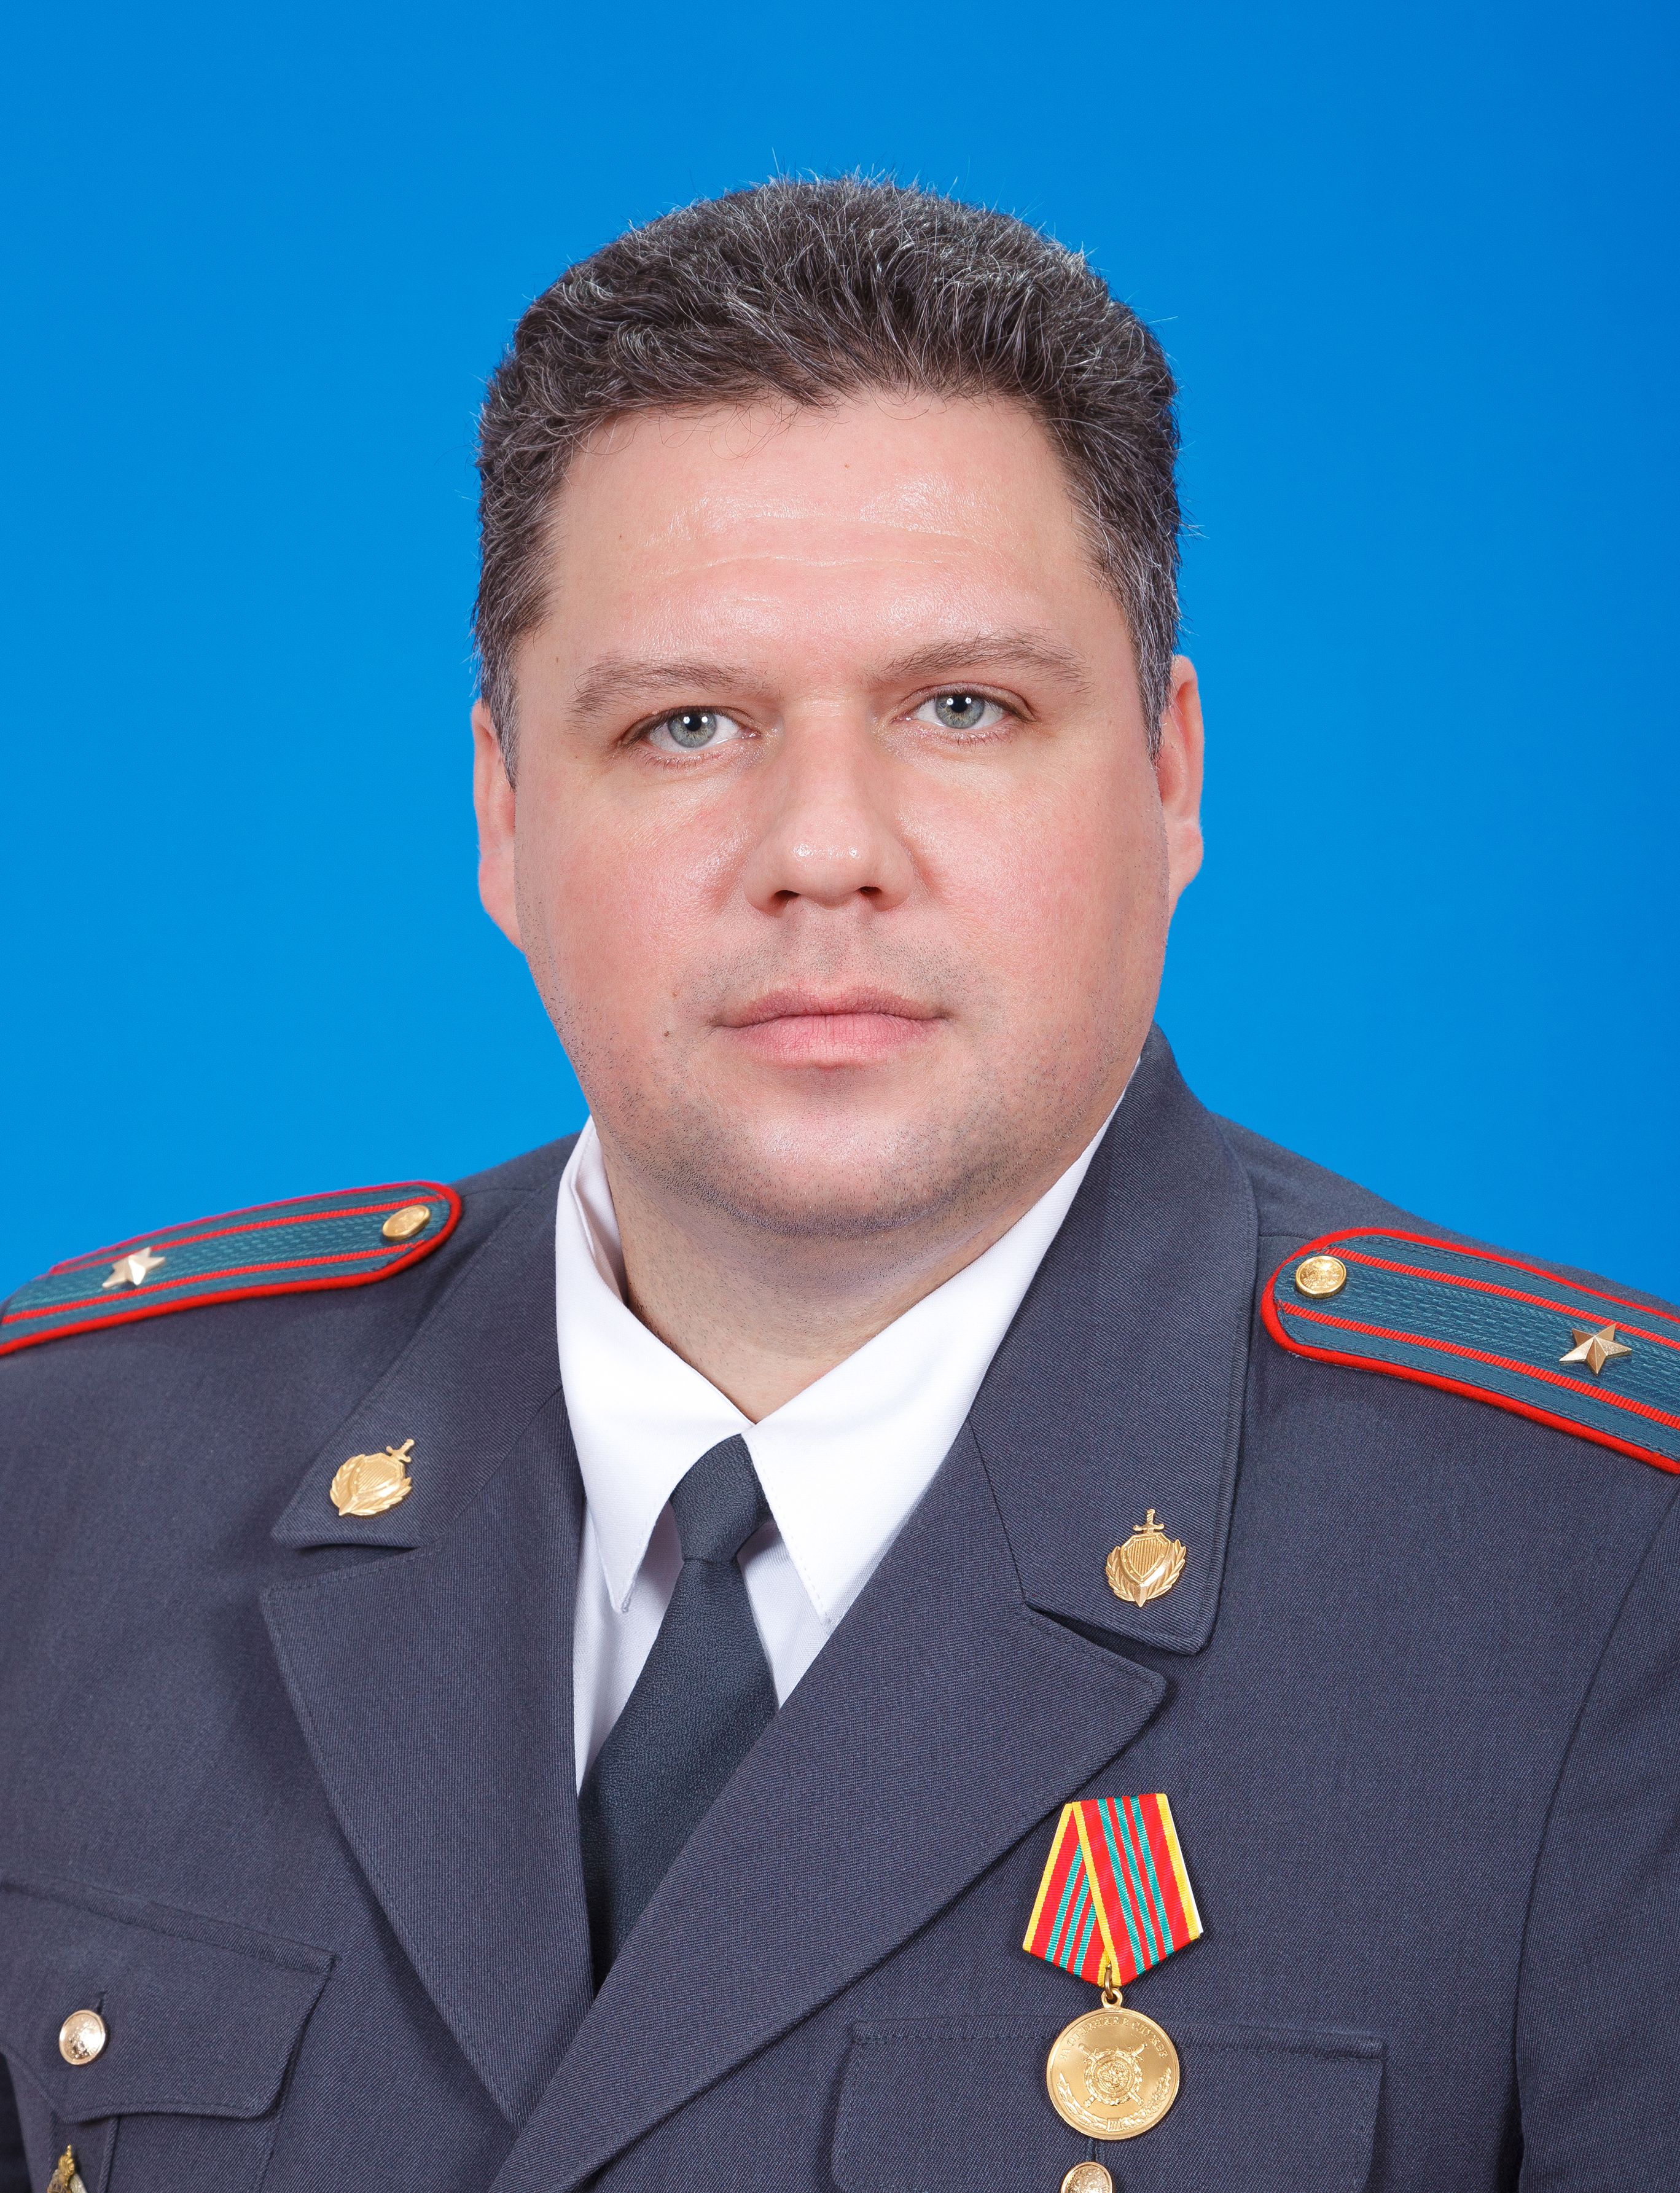 Борин Вадим Николаевич